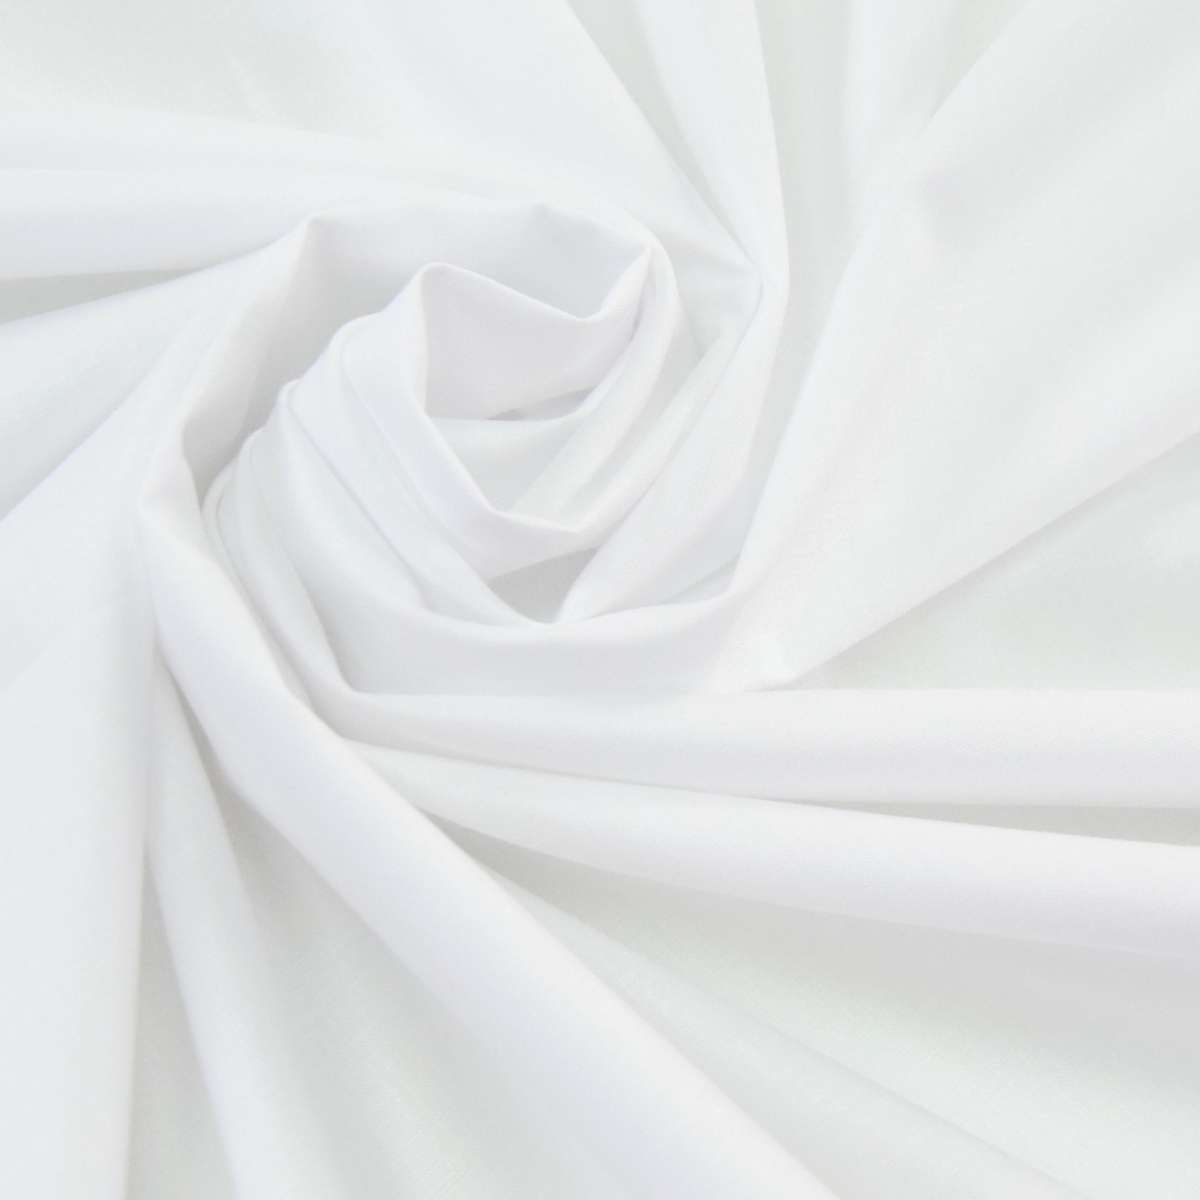 10 Mètre X 90" largeur plume preuve tissu blanc 100% batiste de coton 